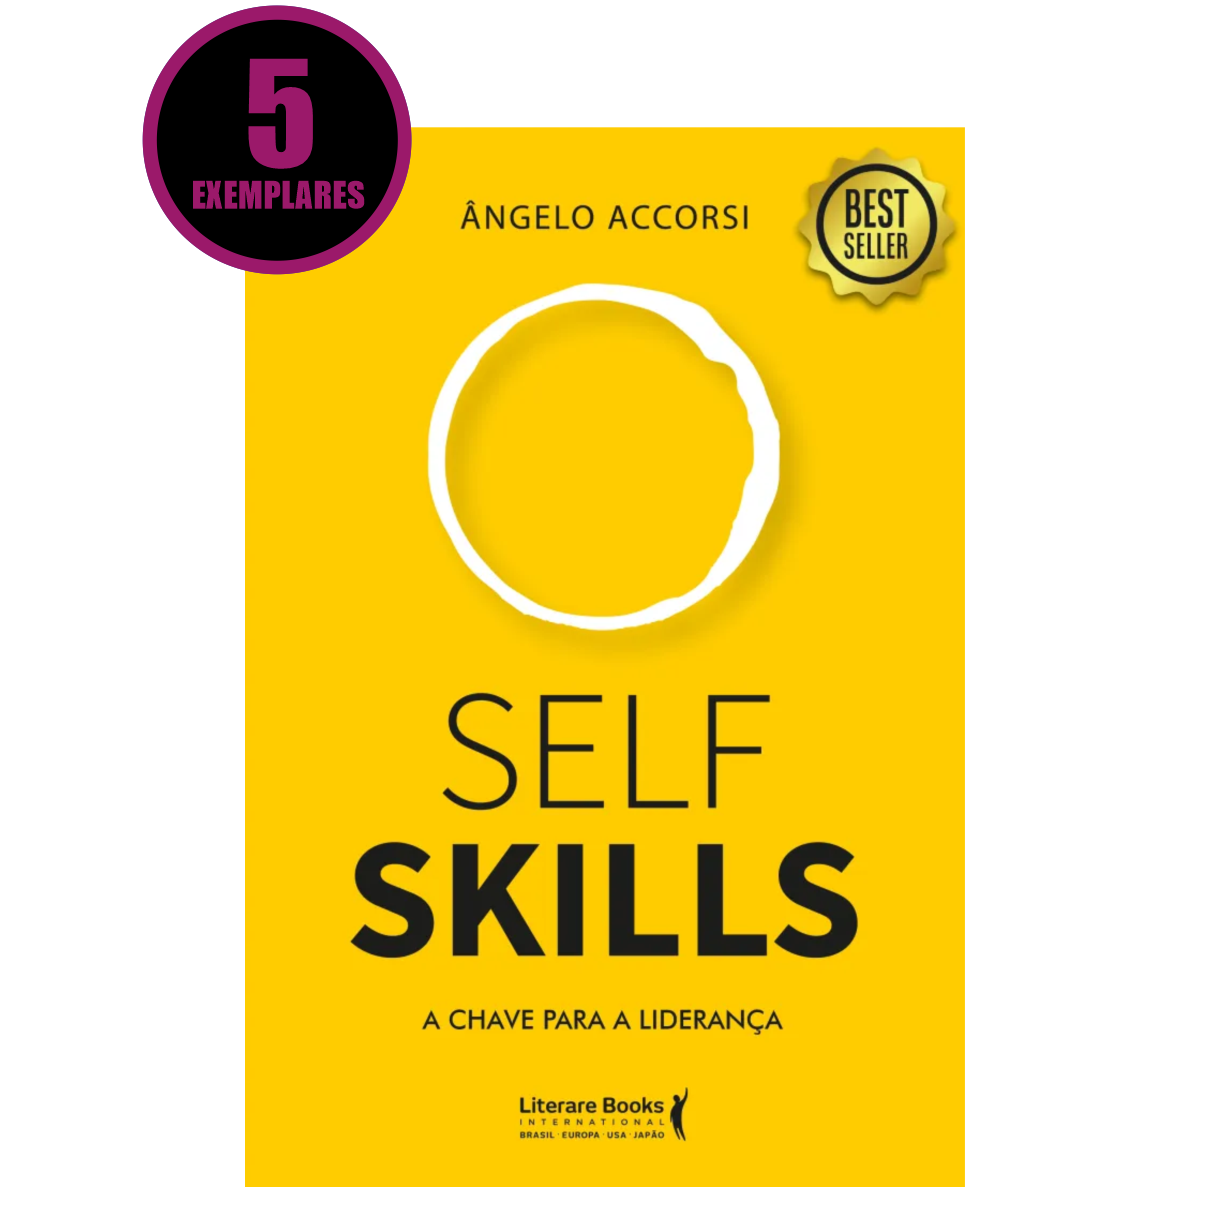 Self Skills (KIT ESPECIAL COM 5 LIVROS)